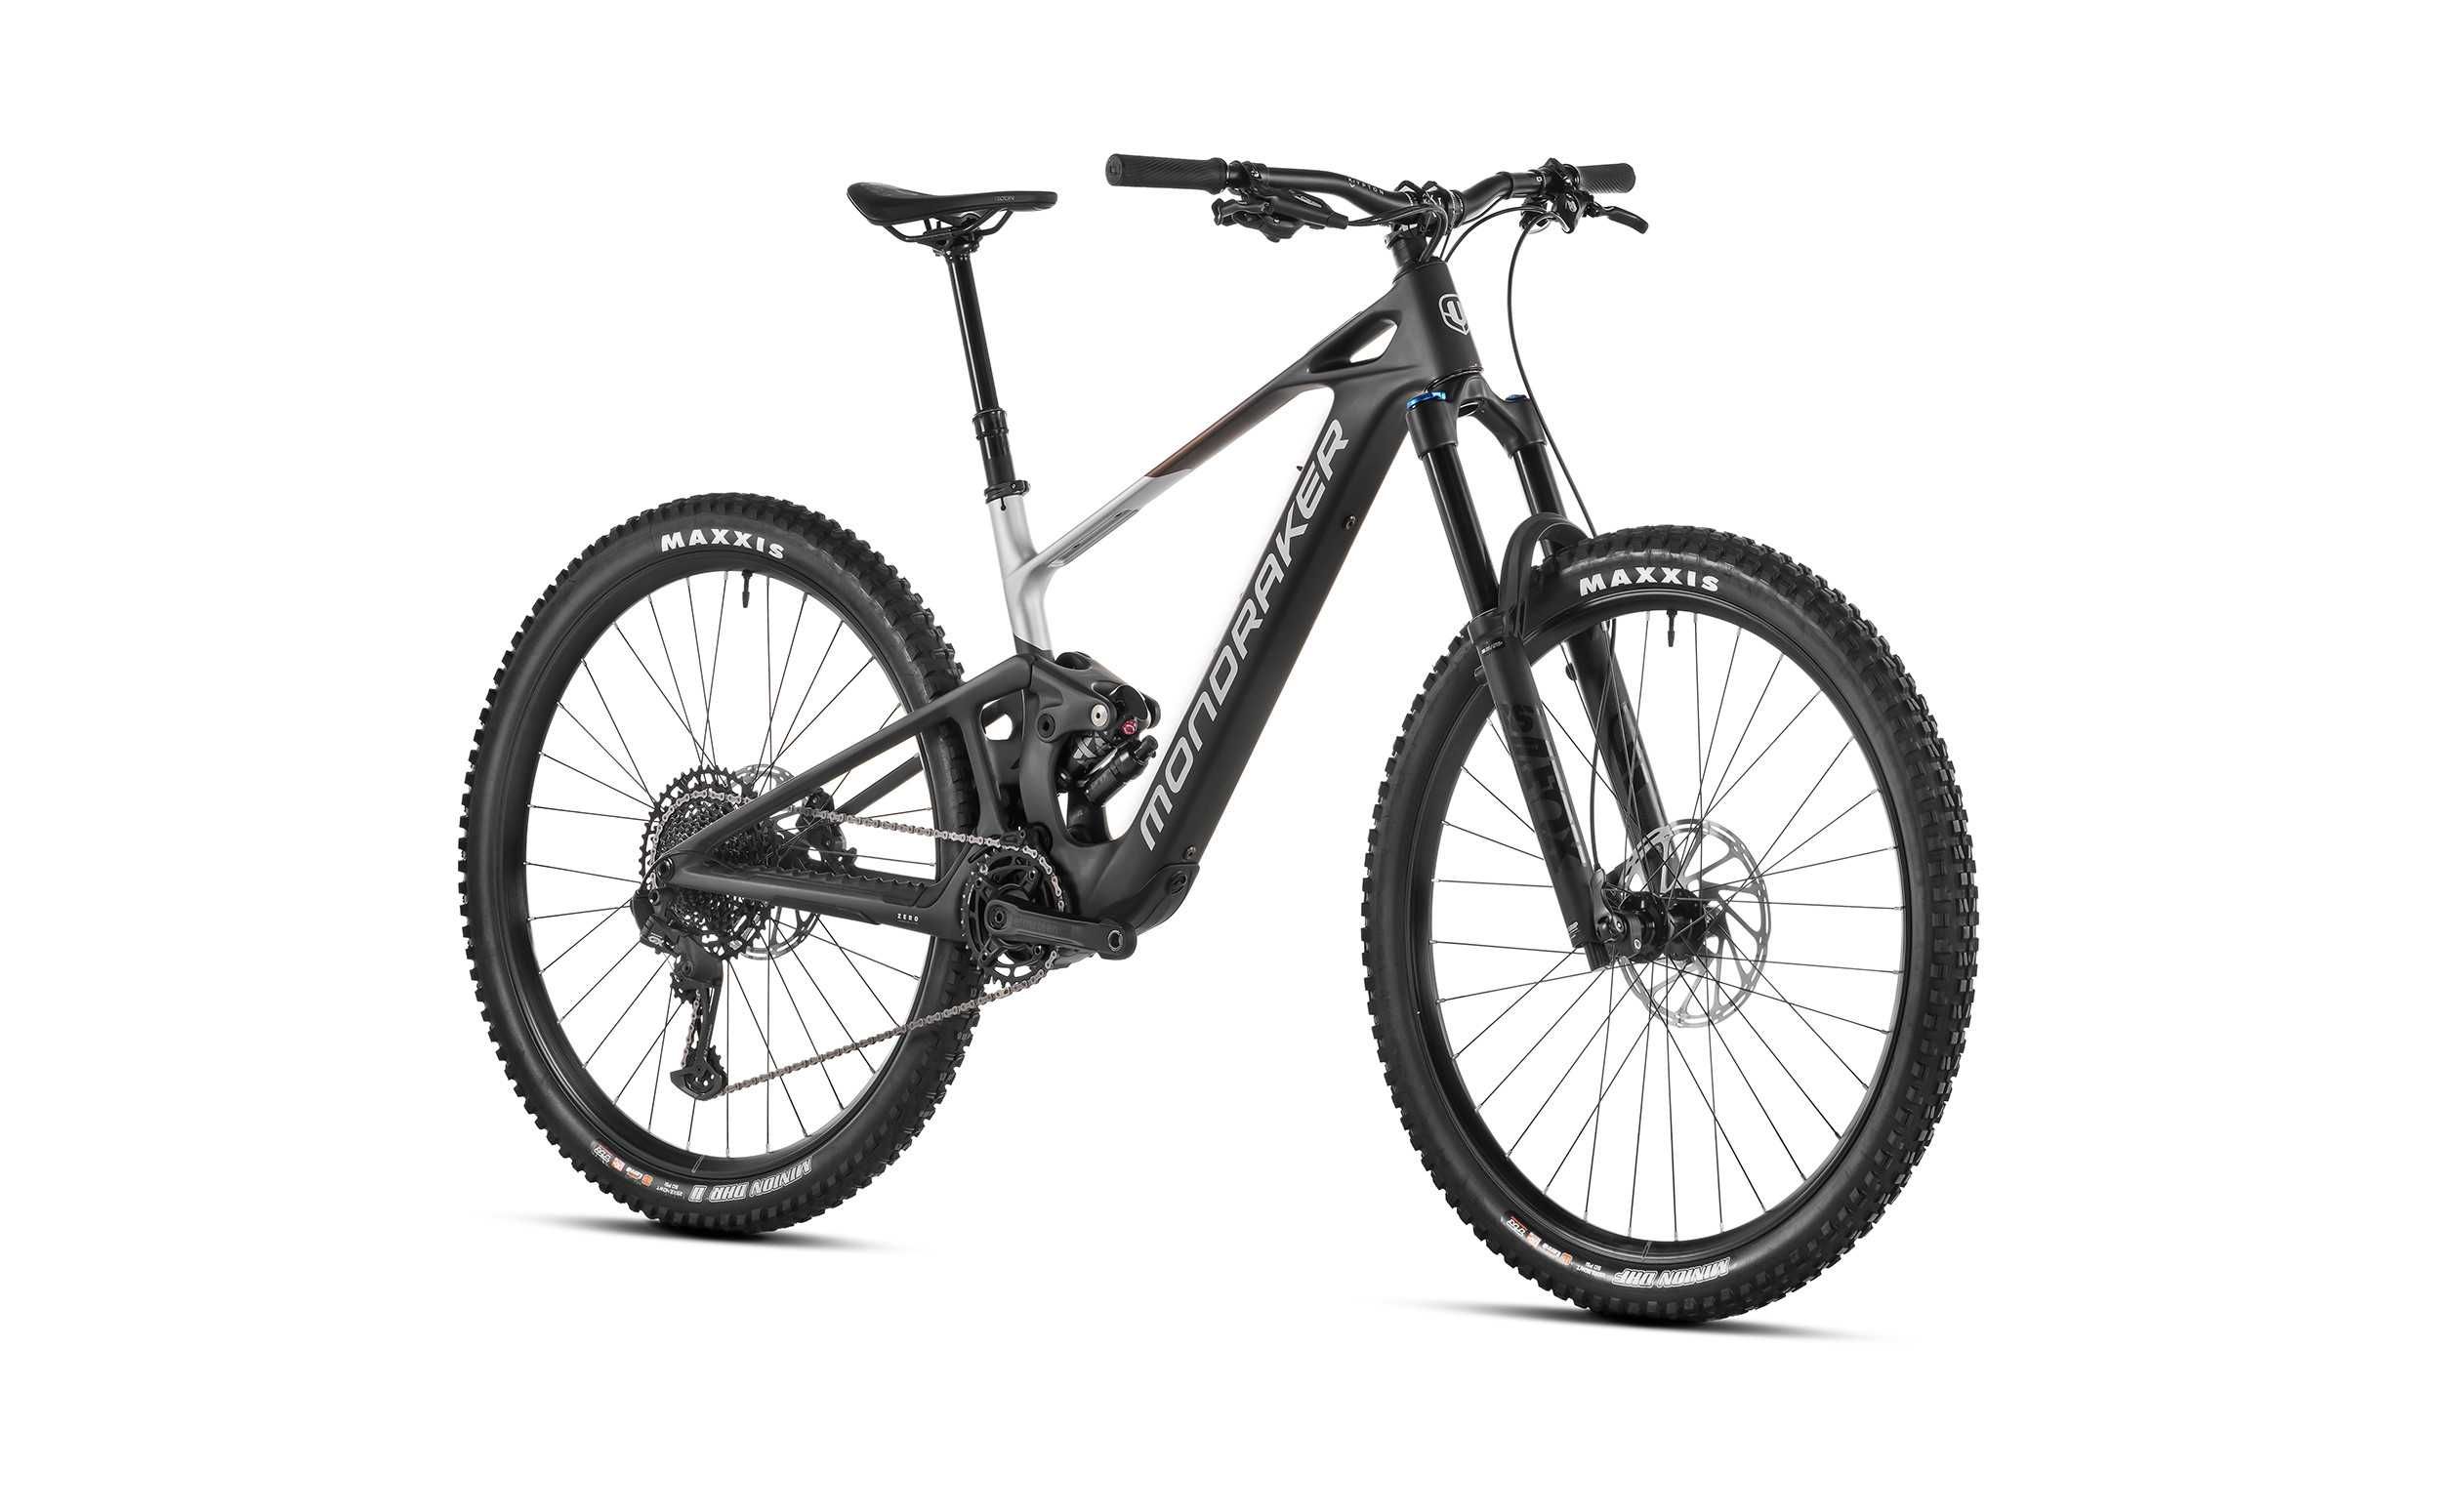 NOWY rower elektryczny Mondraker Neat R w rozmiarze M, L, XL - 18,9kg